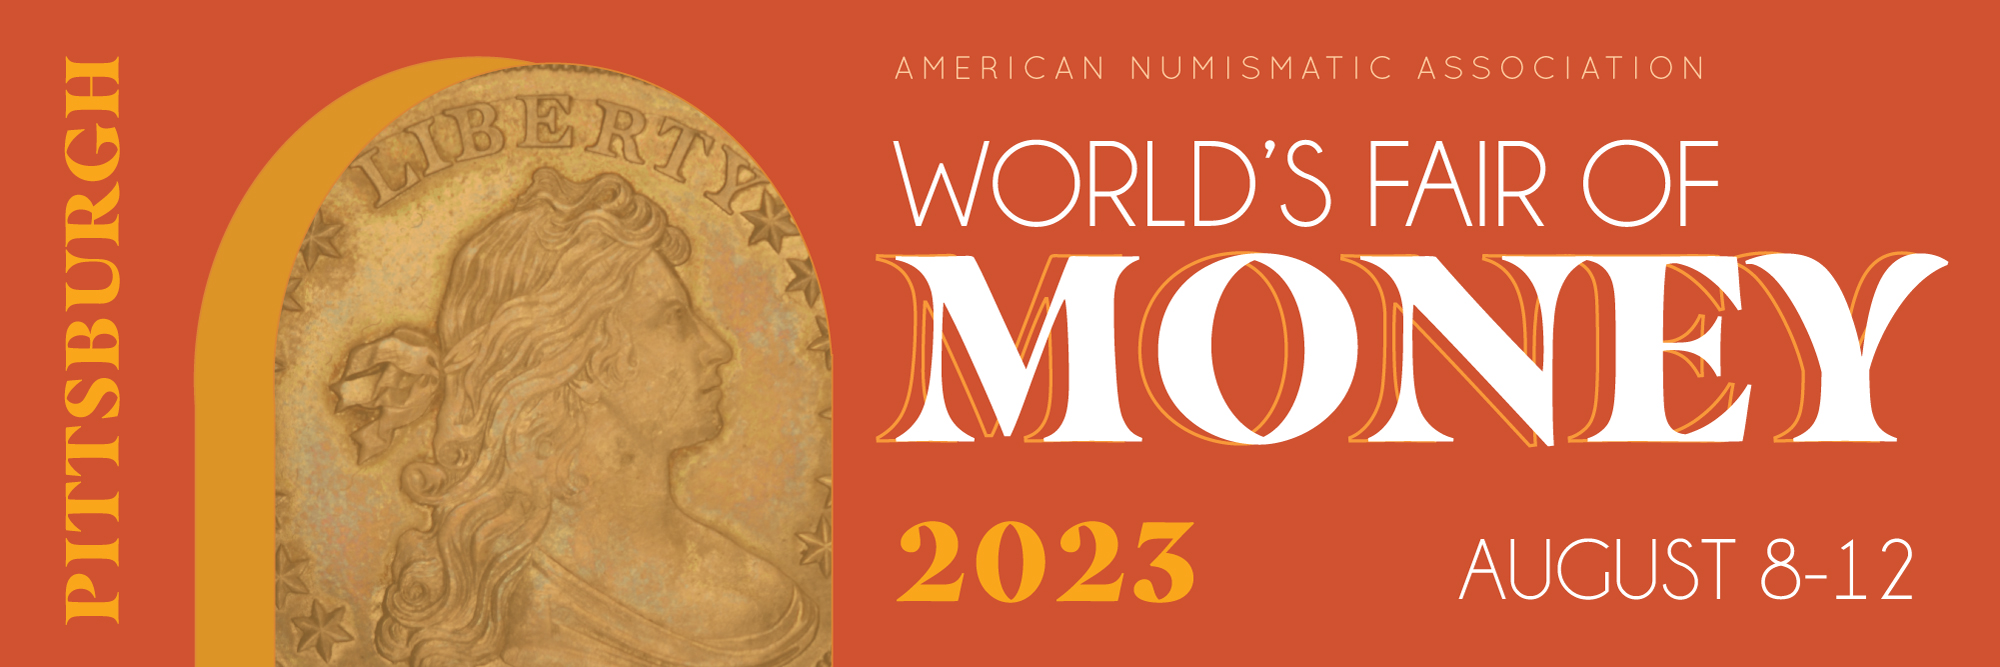 world's fair of money banner 2023